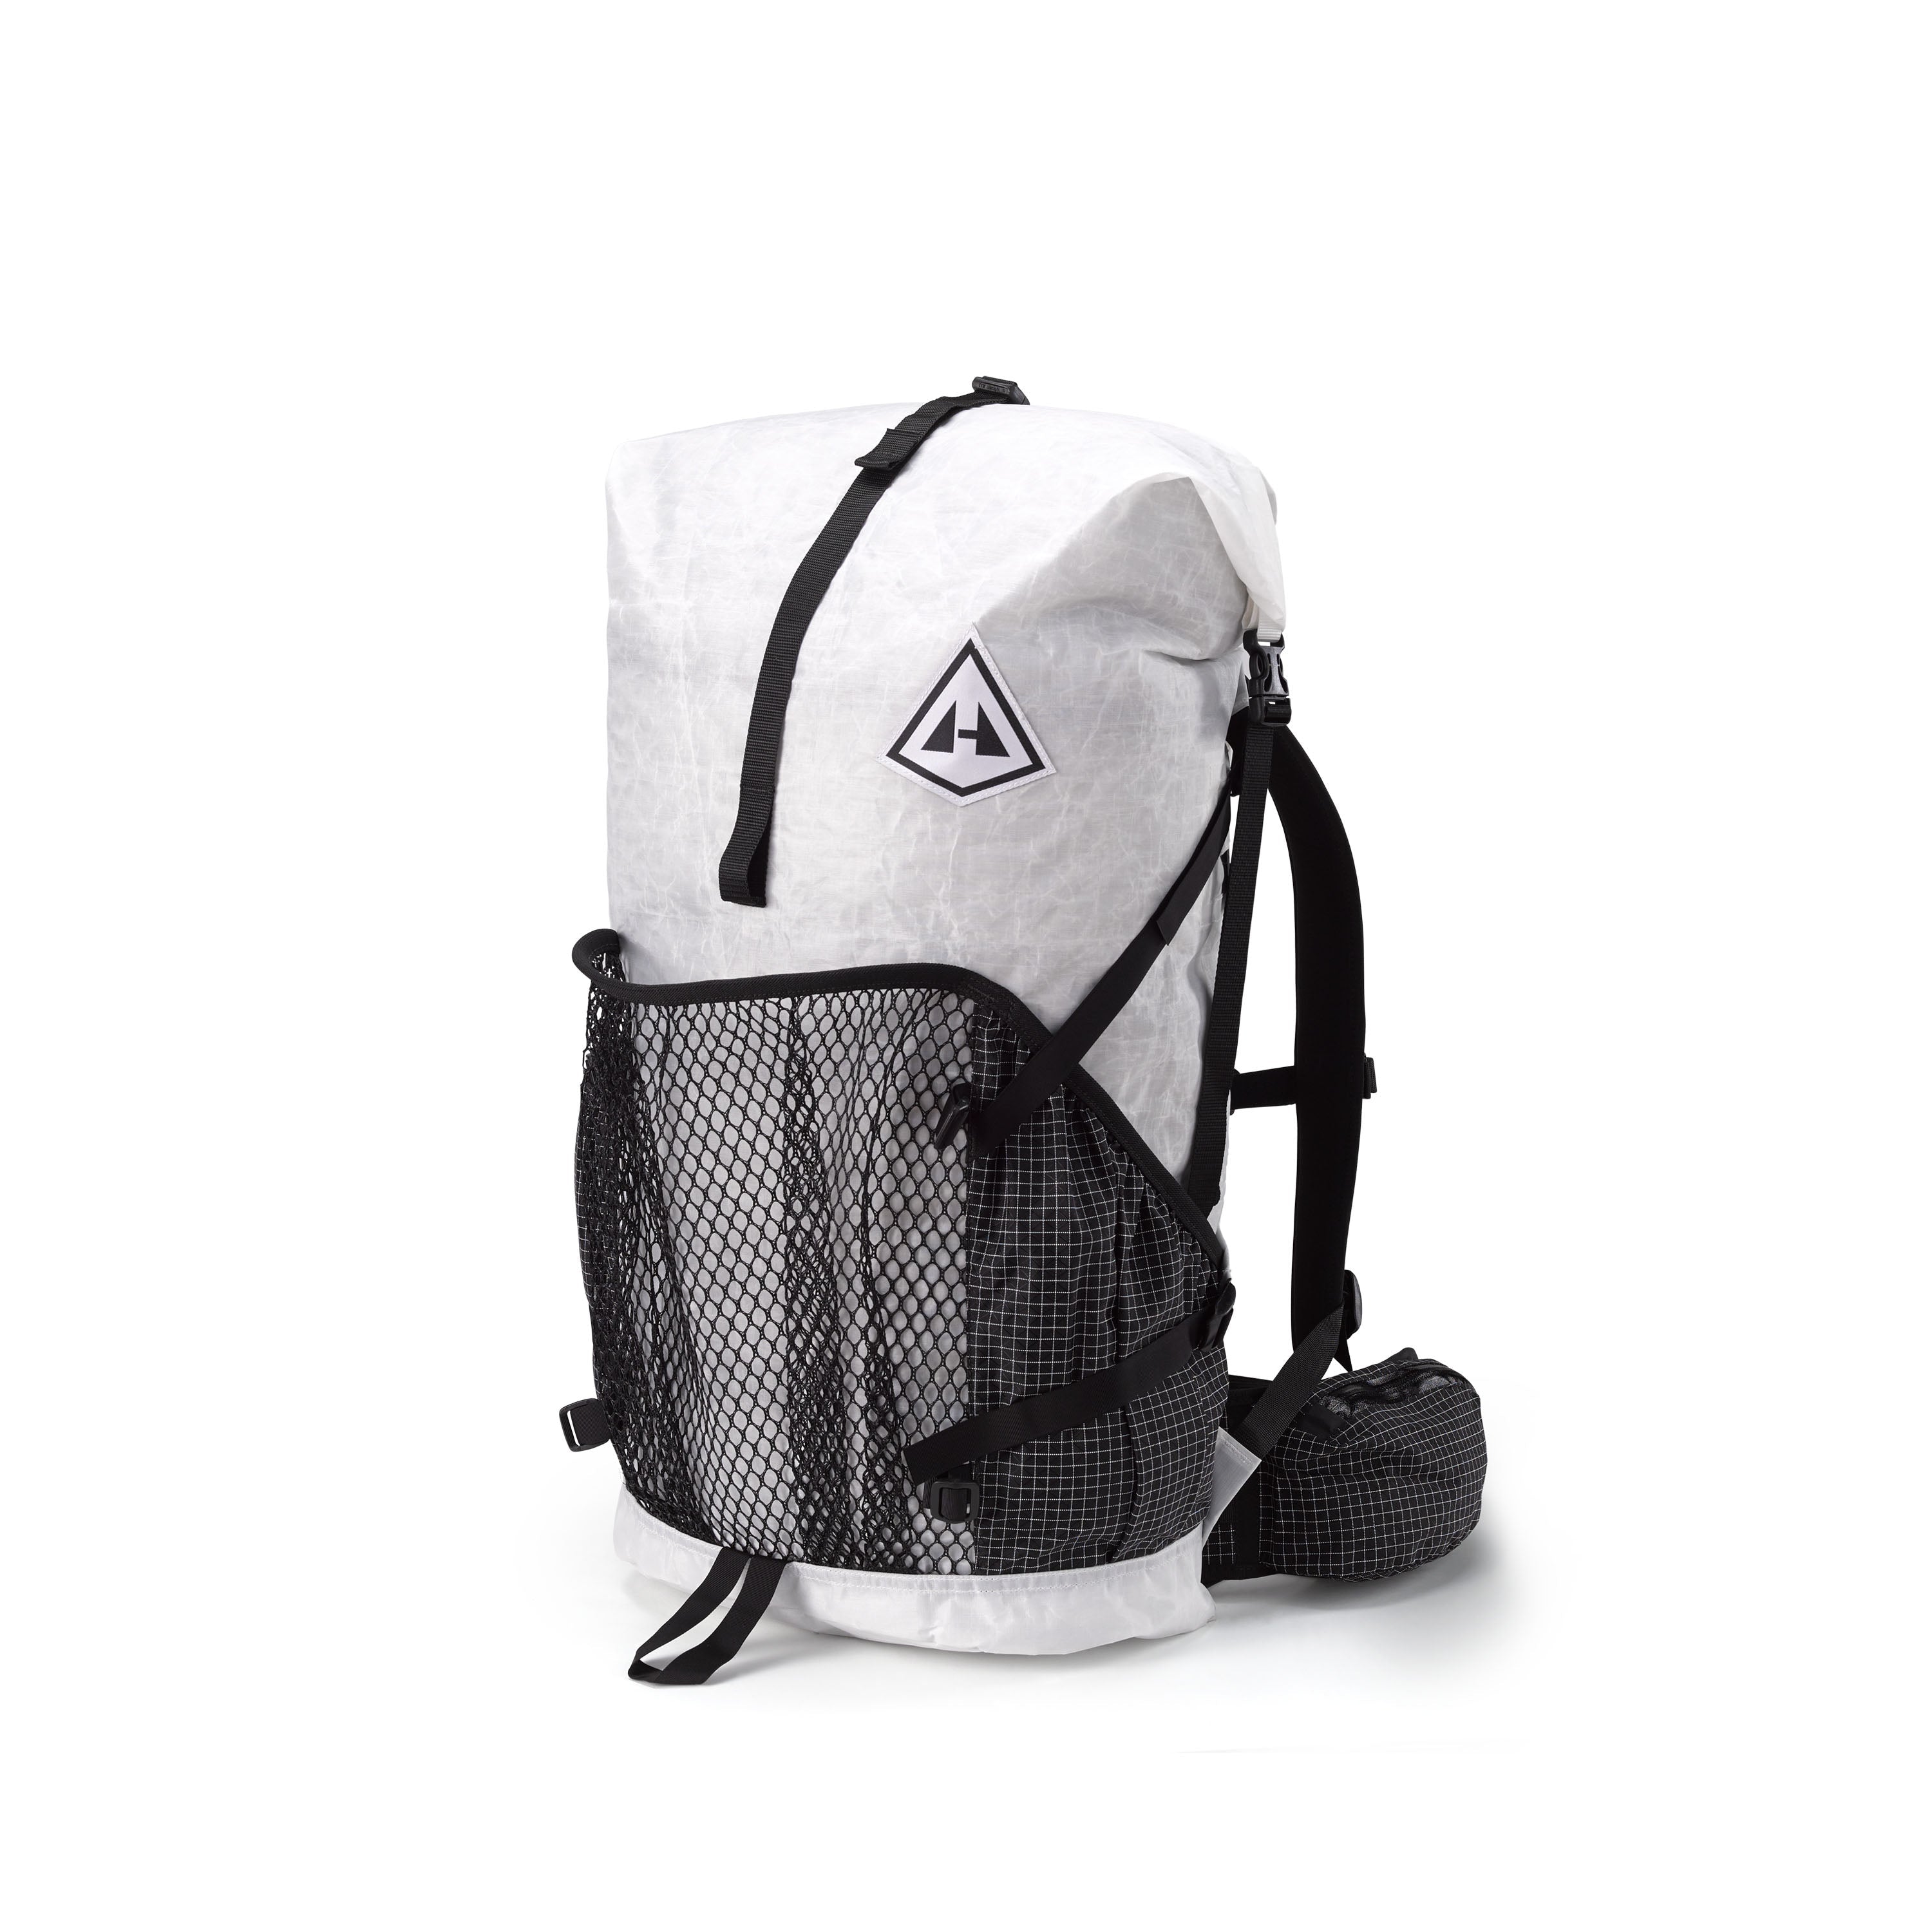 Hyperlite Mountain Gear Backpacks: Trailblazing Lightness!